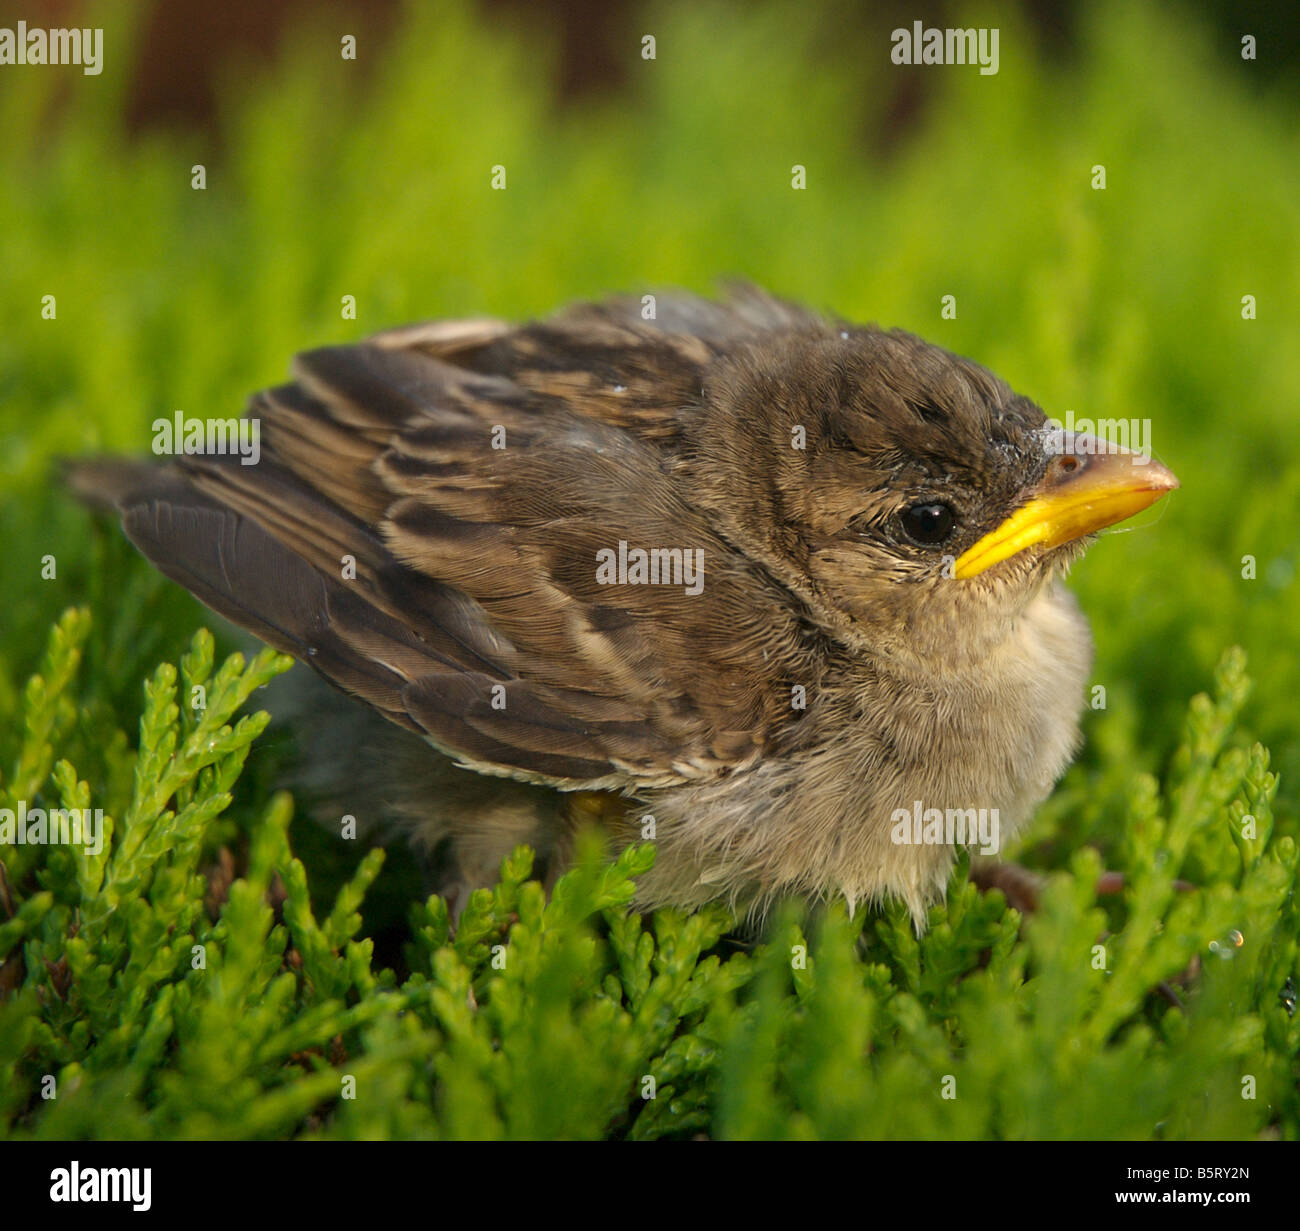 C'est un jeune sparrow un bébé oiseau près d'un mois plus tôt, en raison du changement climatique Banque D'Images